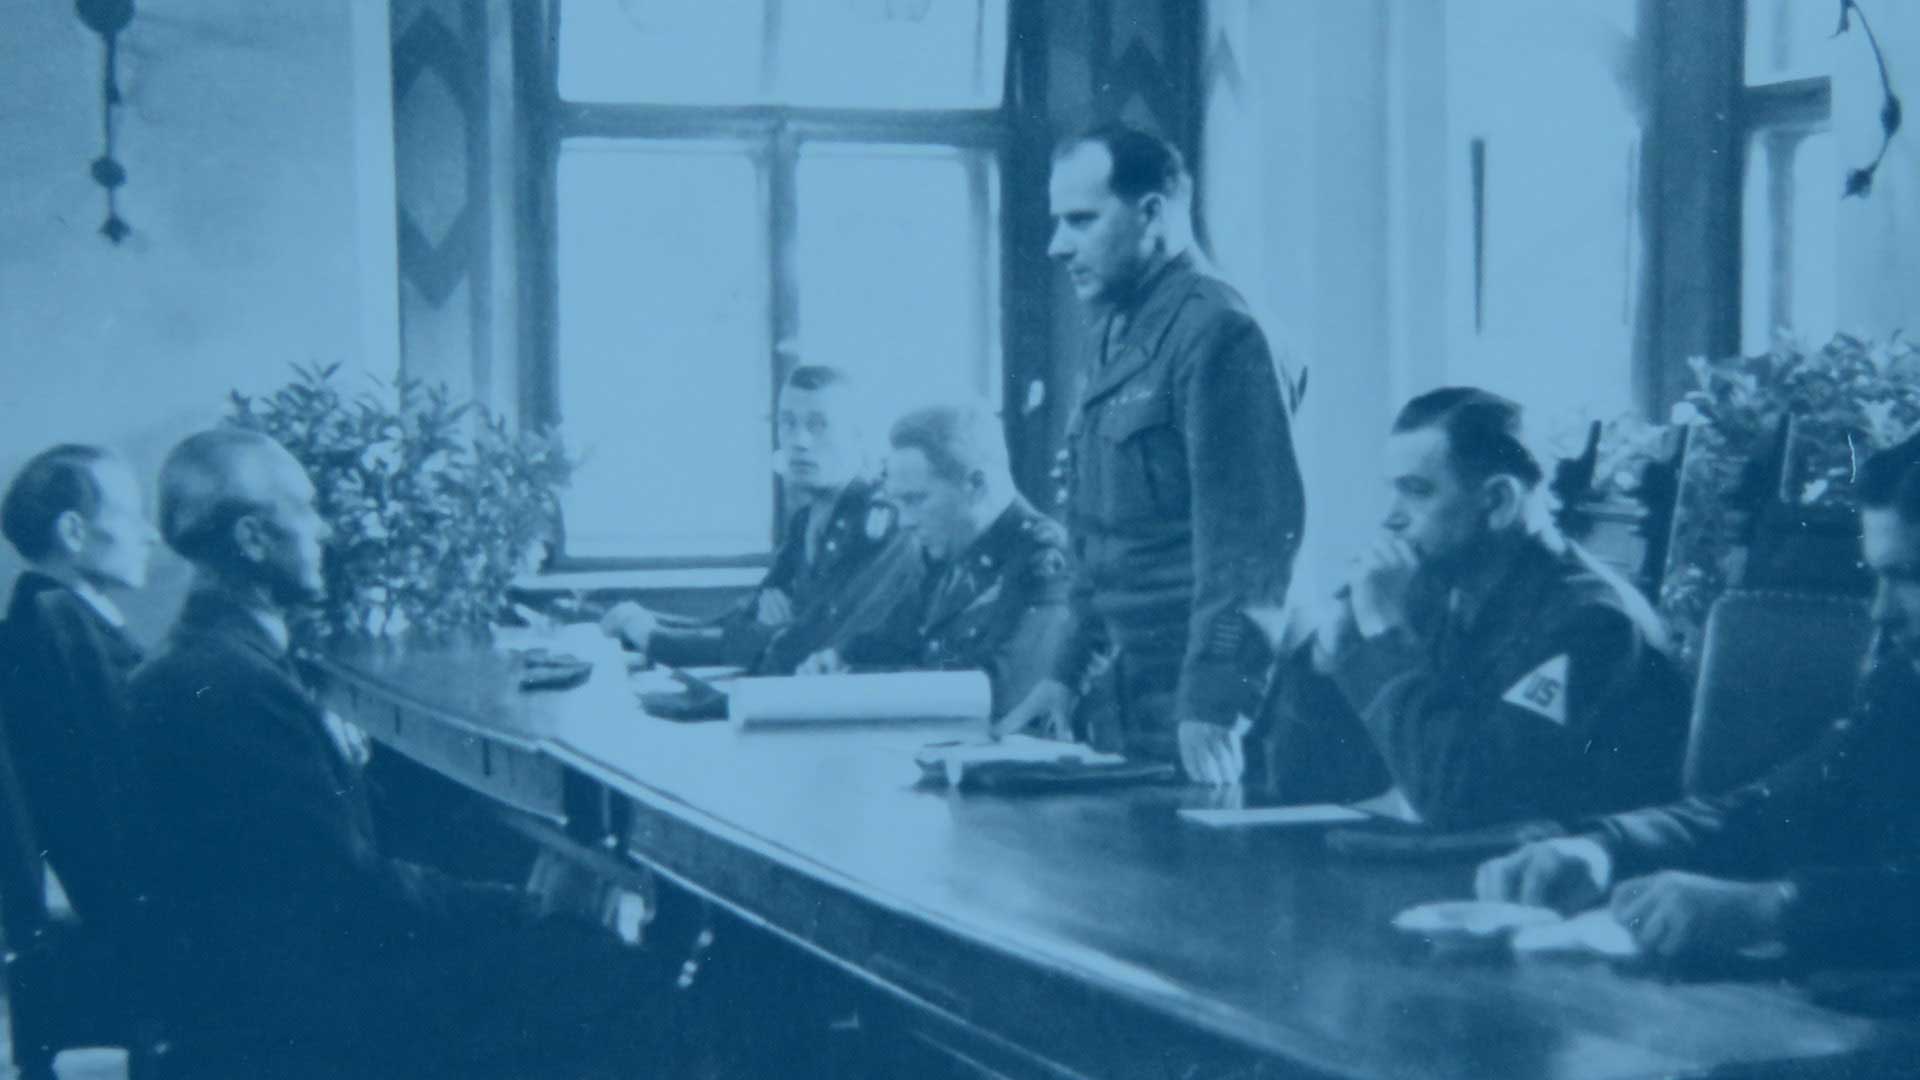 Bild aus der Geschichte von Oberpfalz Medien mit US-Soldaten in Uniform, die die Lizenz für die Herausgabe des neuen Tags erteilen.